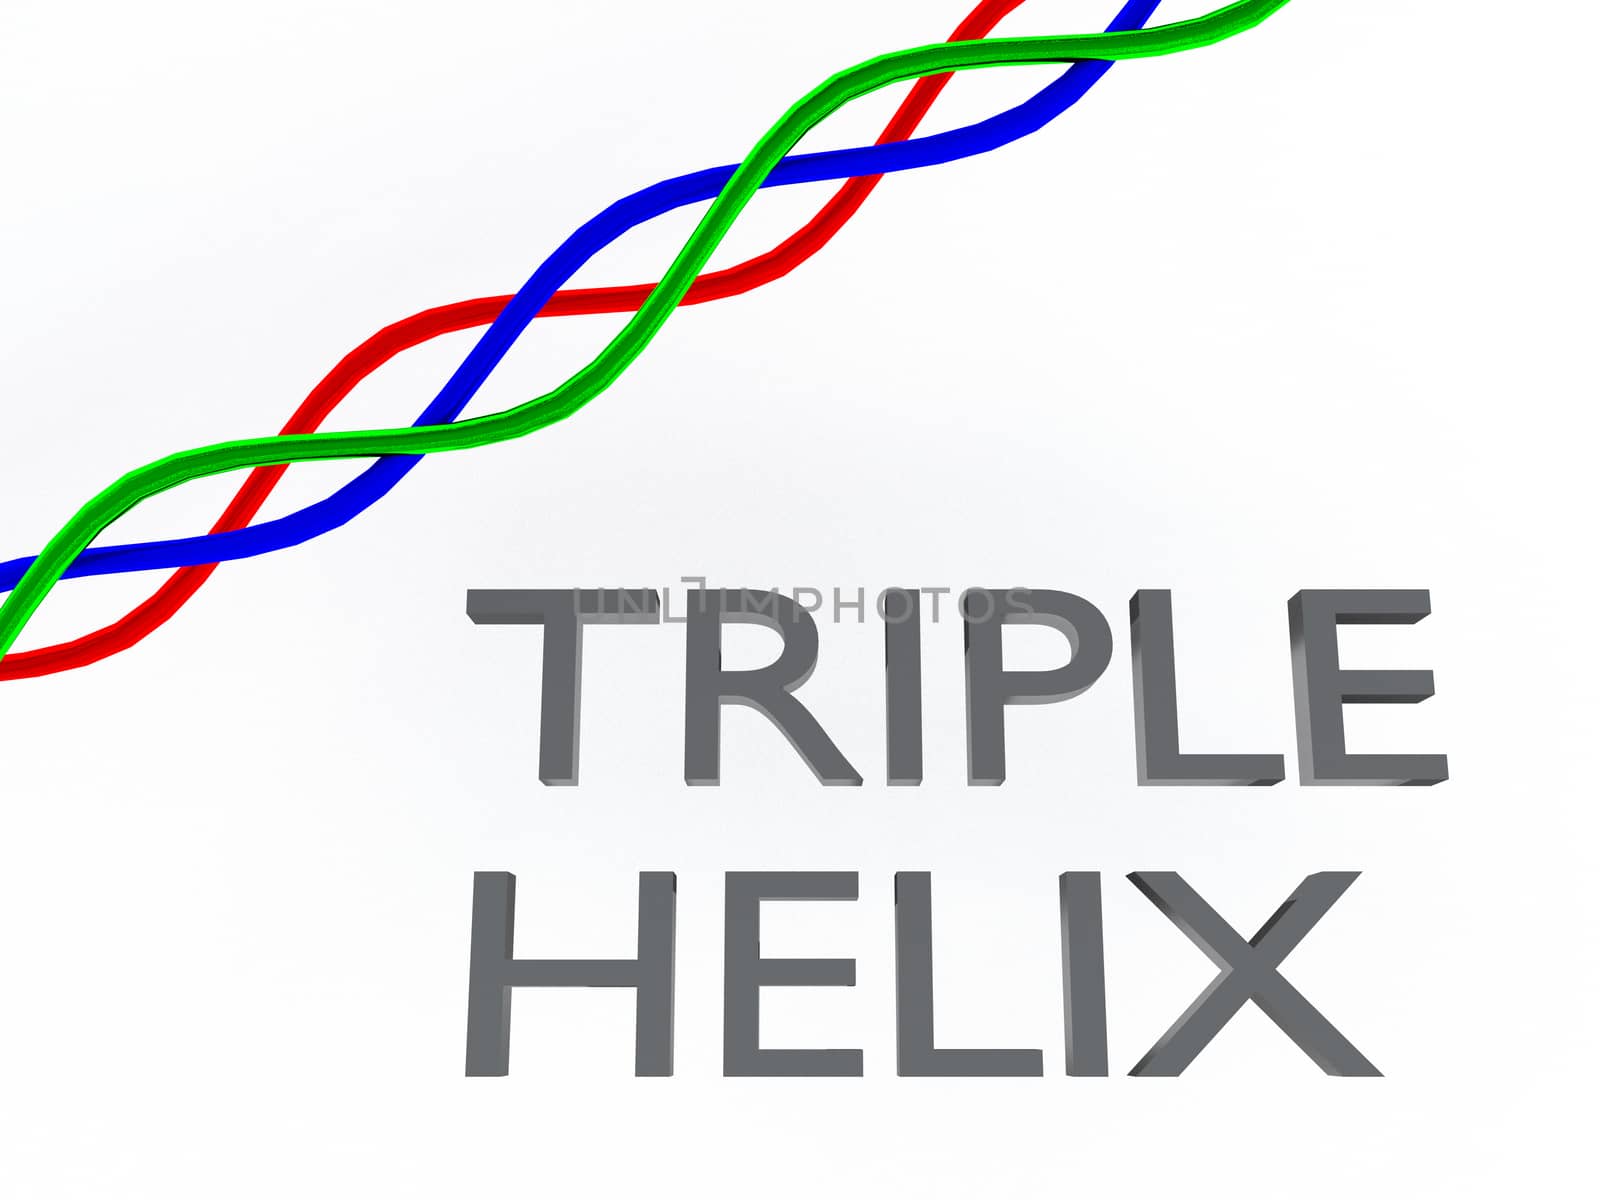 TRIPLE HELIX concept by HD_premium_shots